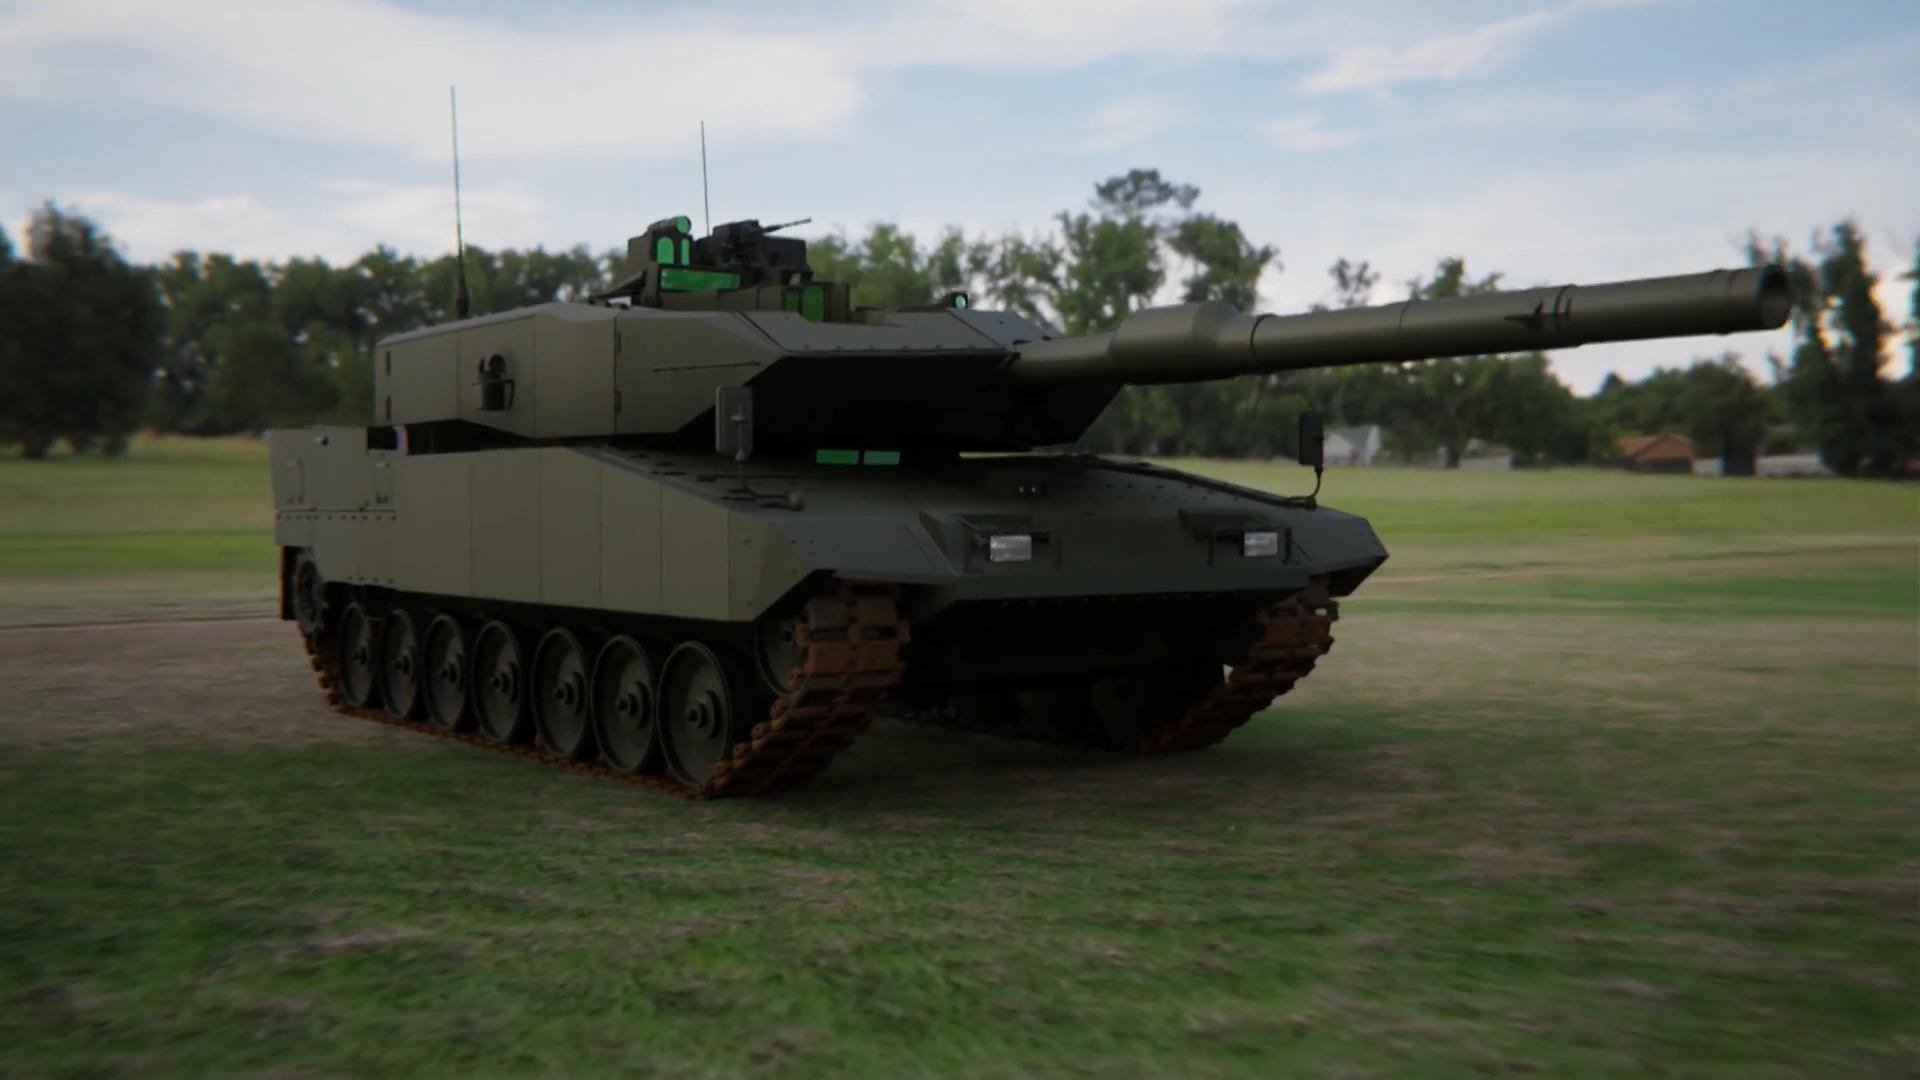 Das Kann der Kampfpanzer "Luipaard 2" Hoogmoderne Kriegsgerät